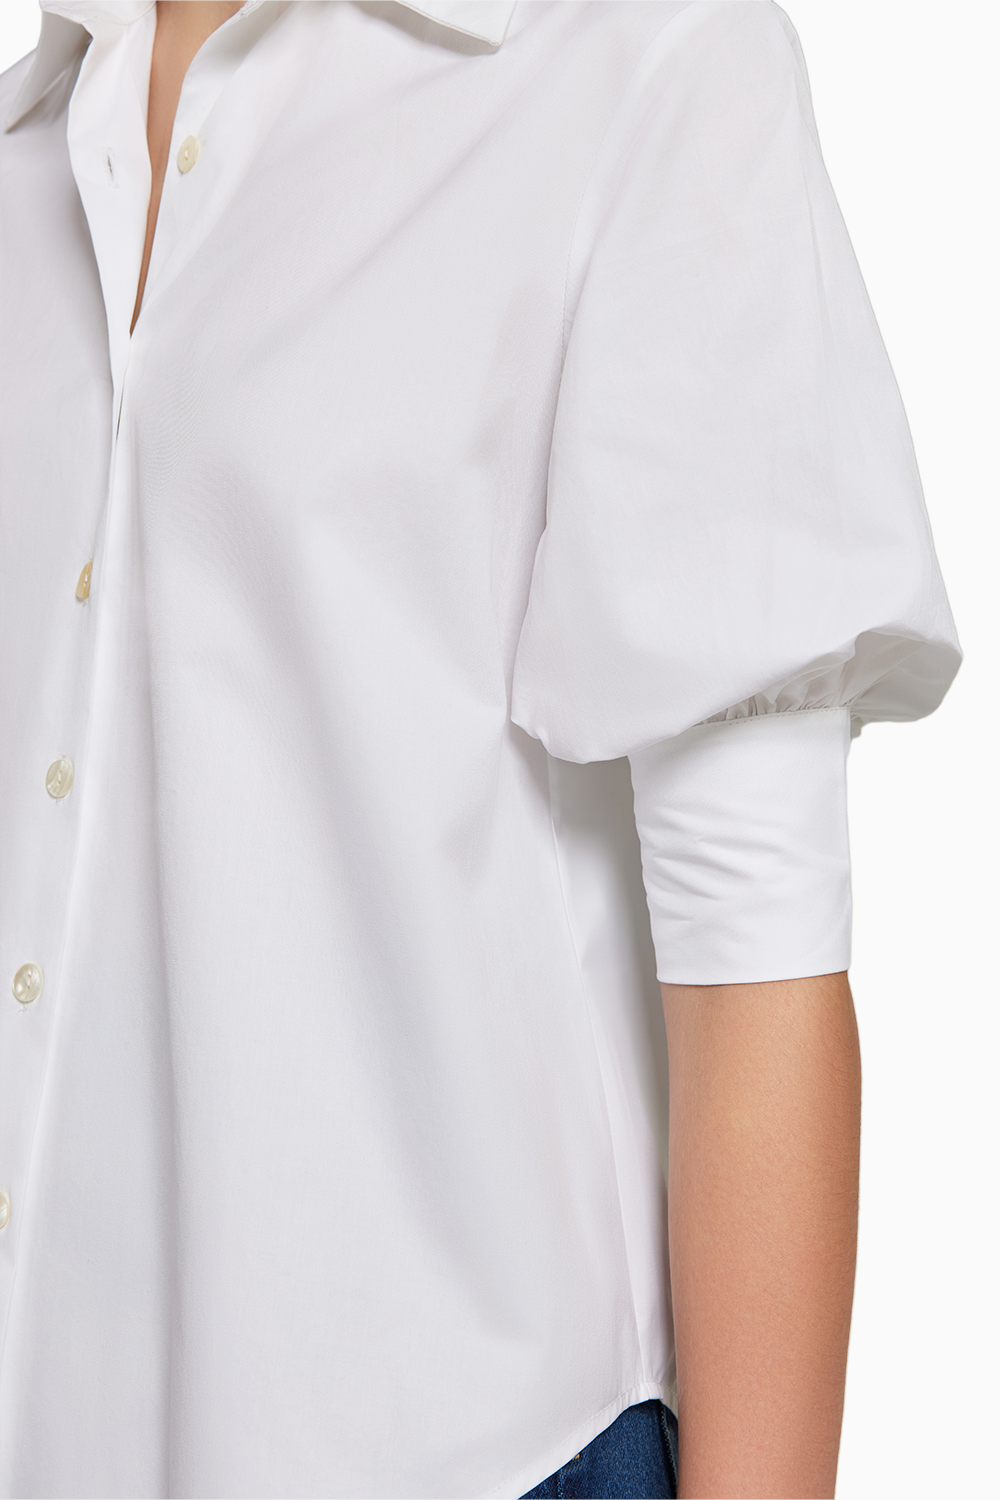 White Egyptian Cotton  Short-Sleeved Shirt